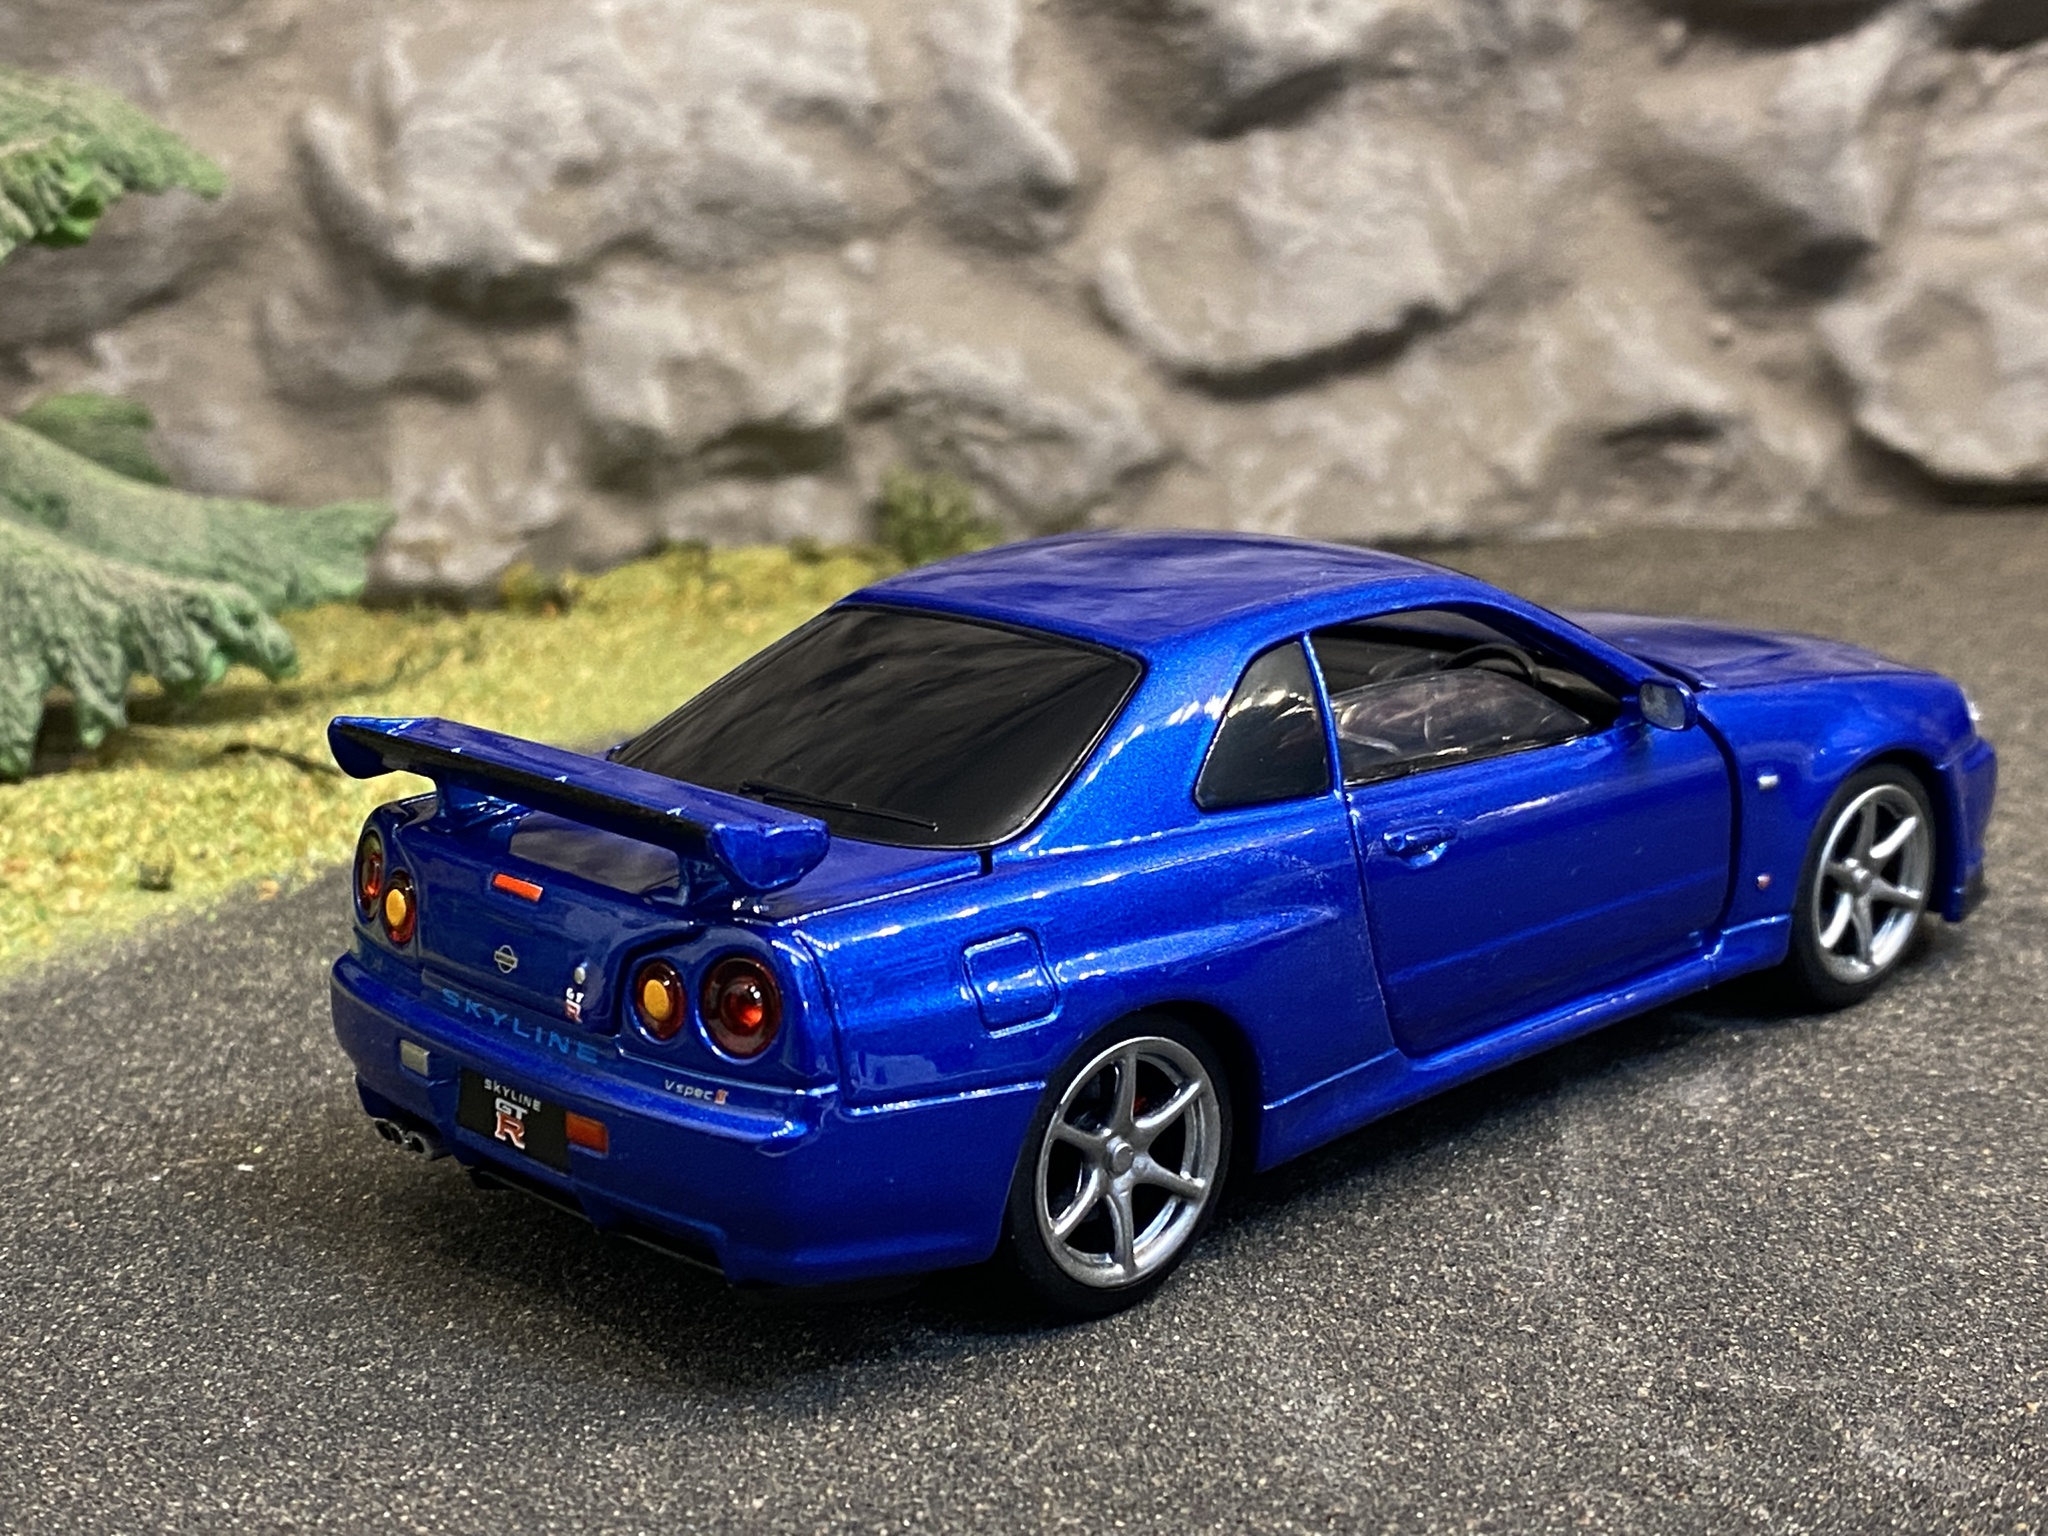 Skala 1/32 Nissan GT-R34 V-spec II, Blå, från Tayumo